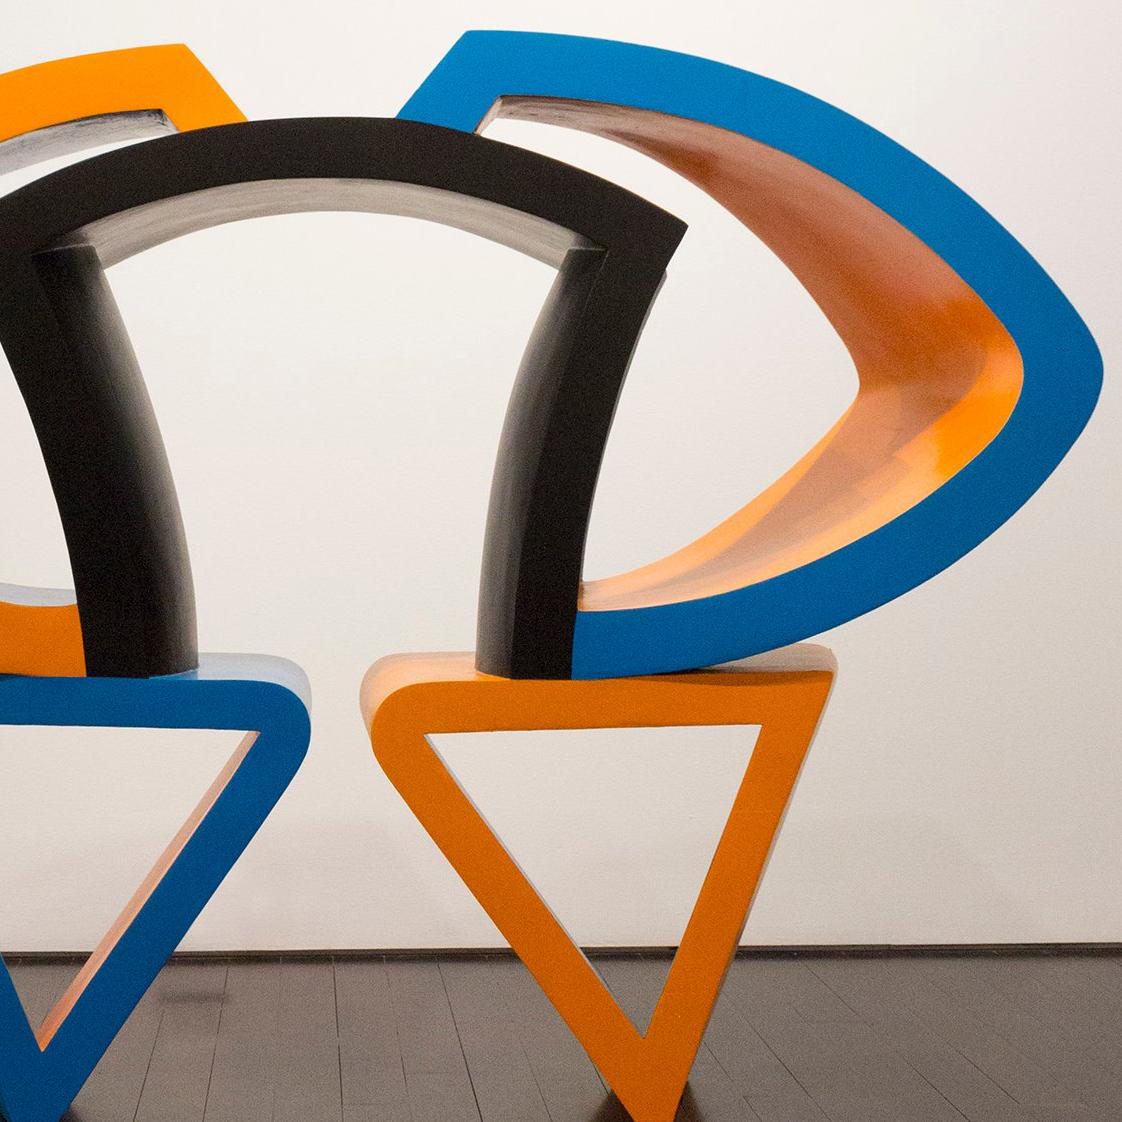 Schwarz, Blau und Schwarz (Beige), Abstract Sculpture, von George Sugarman